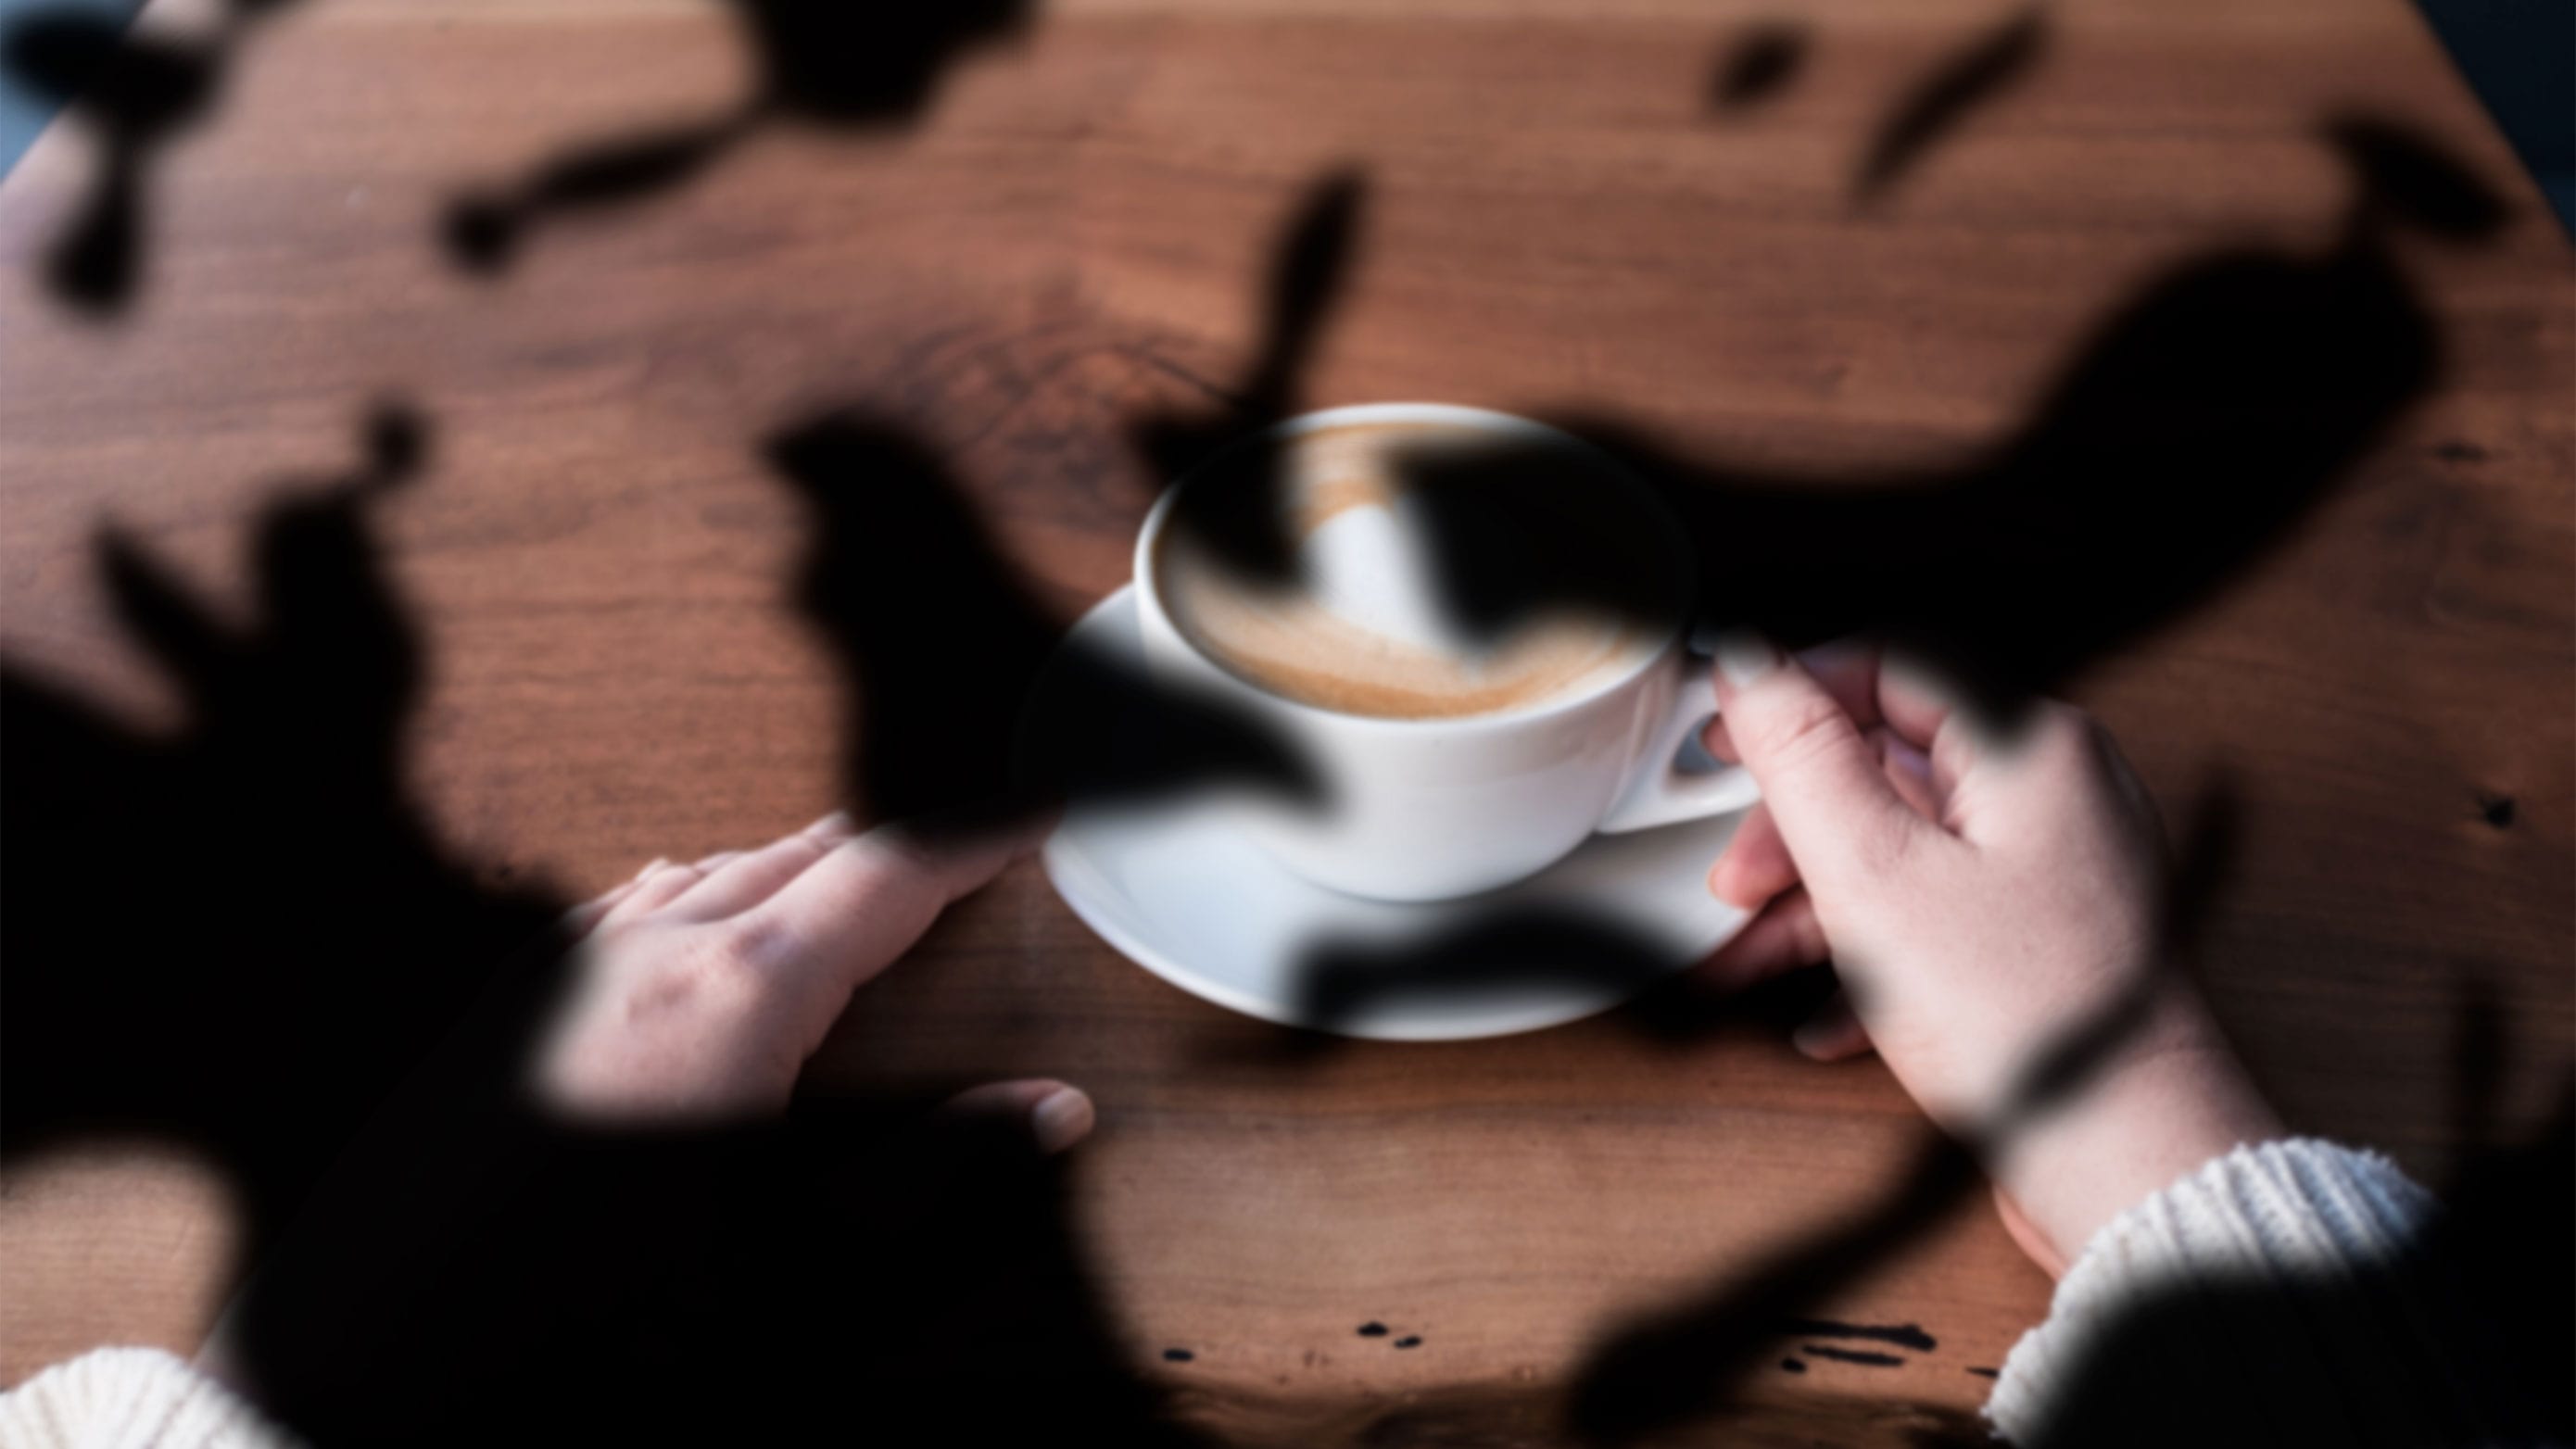 Imagen de una taza de café con manchas oscuras en ambos campos visuales.